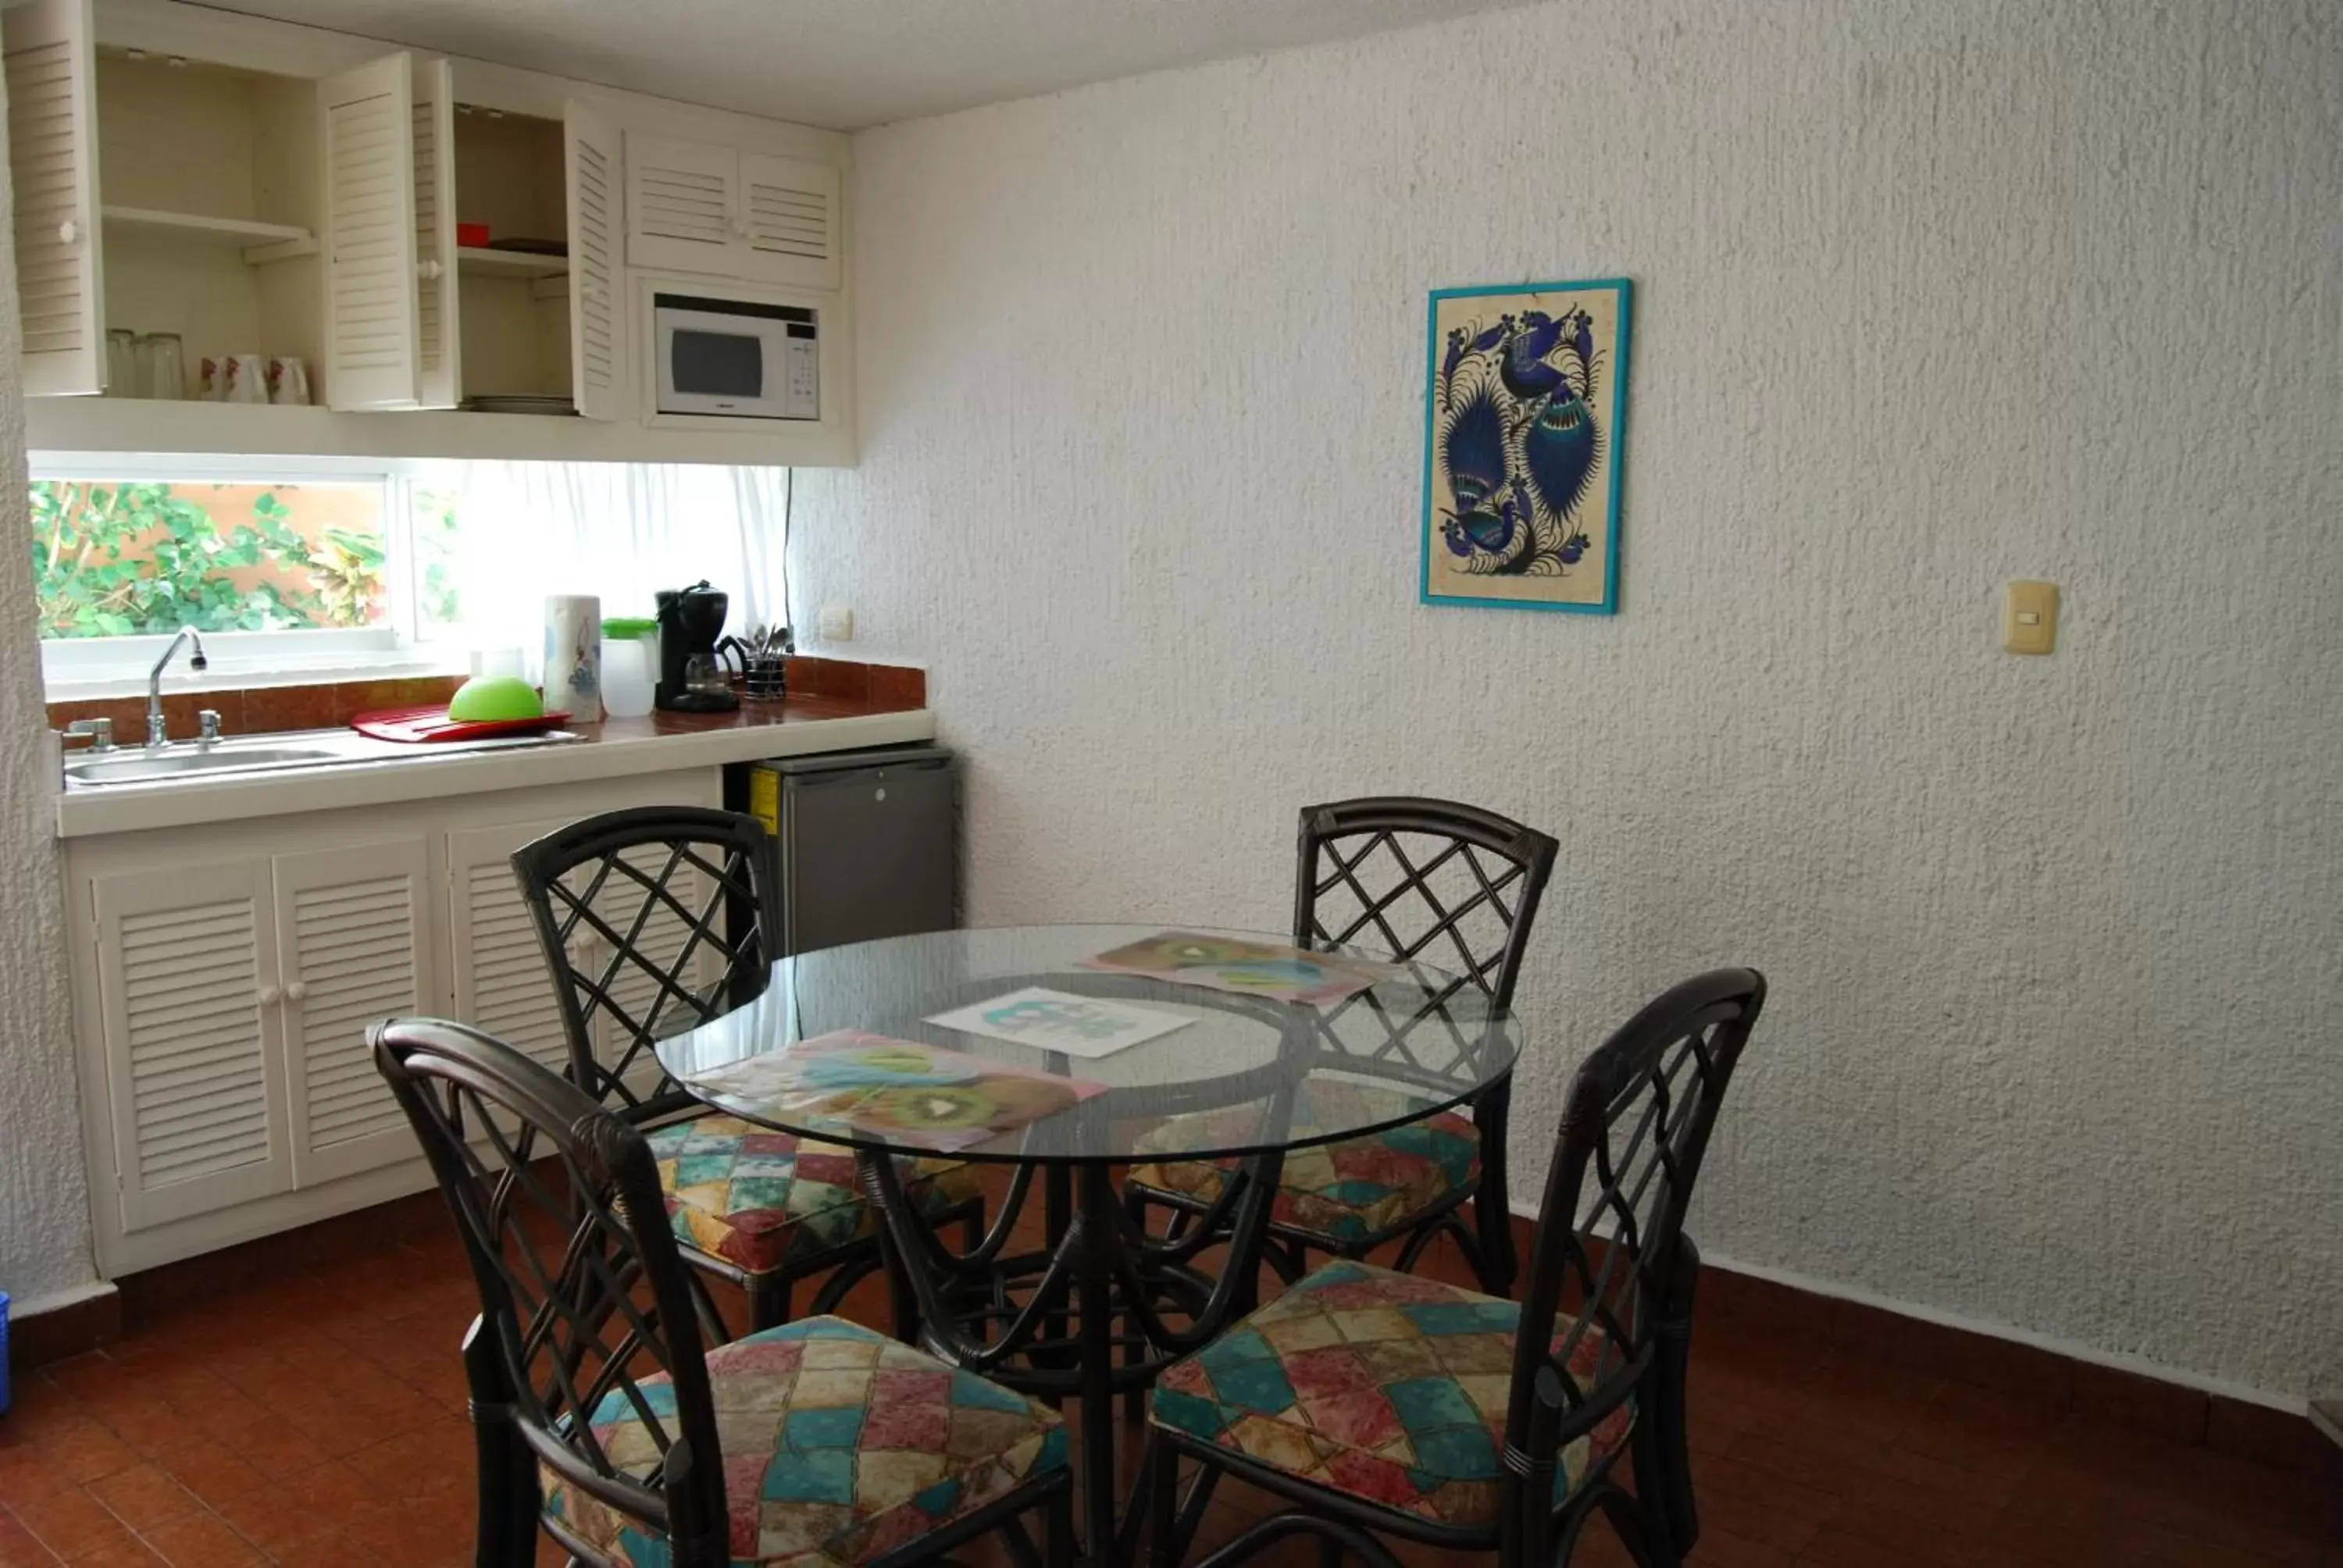 Coffee/tea facilities, Dining Area in Hotel Villas Las Anclas